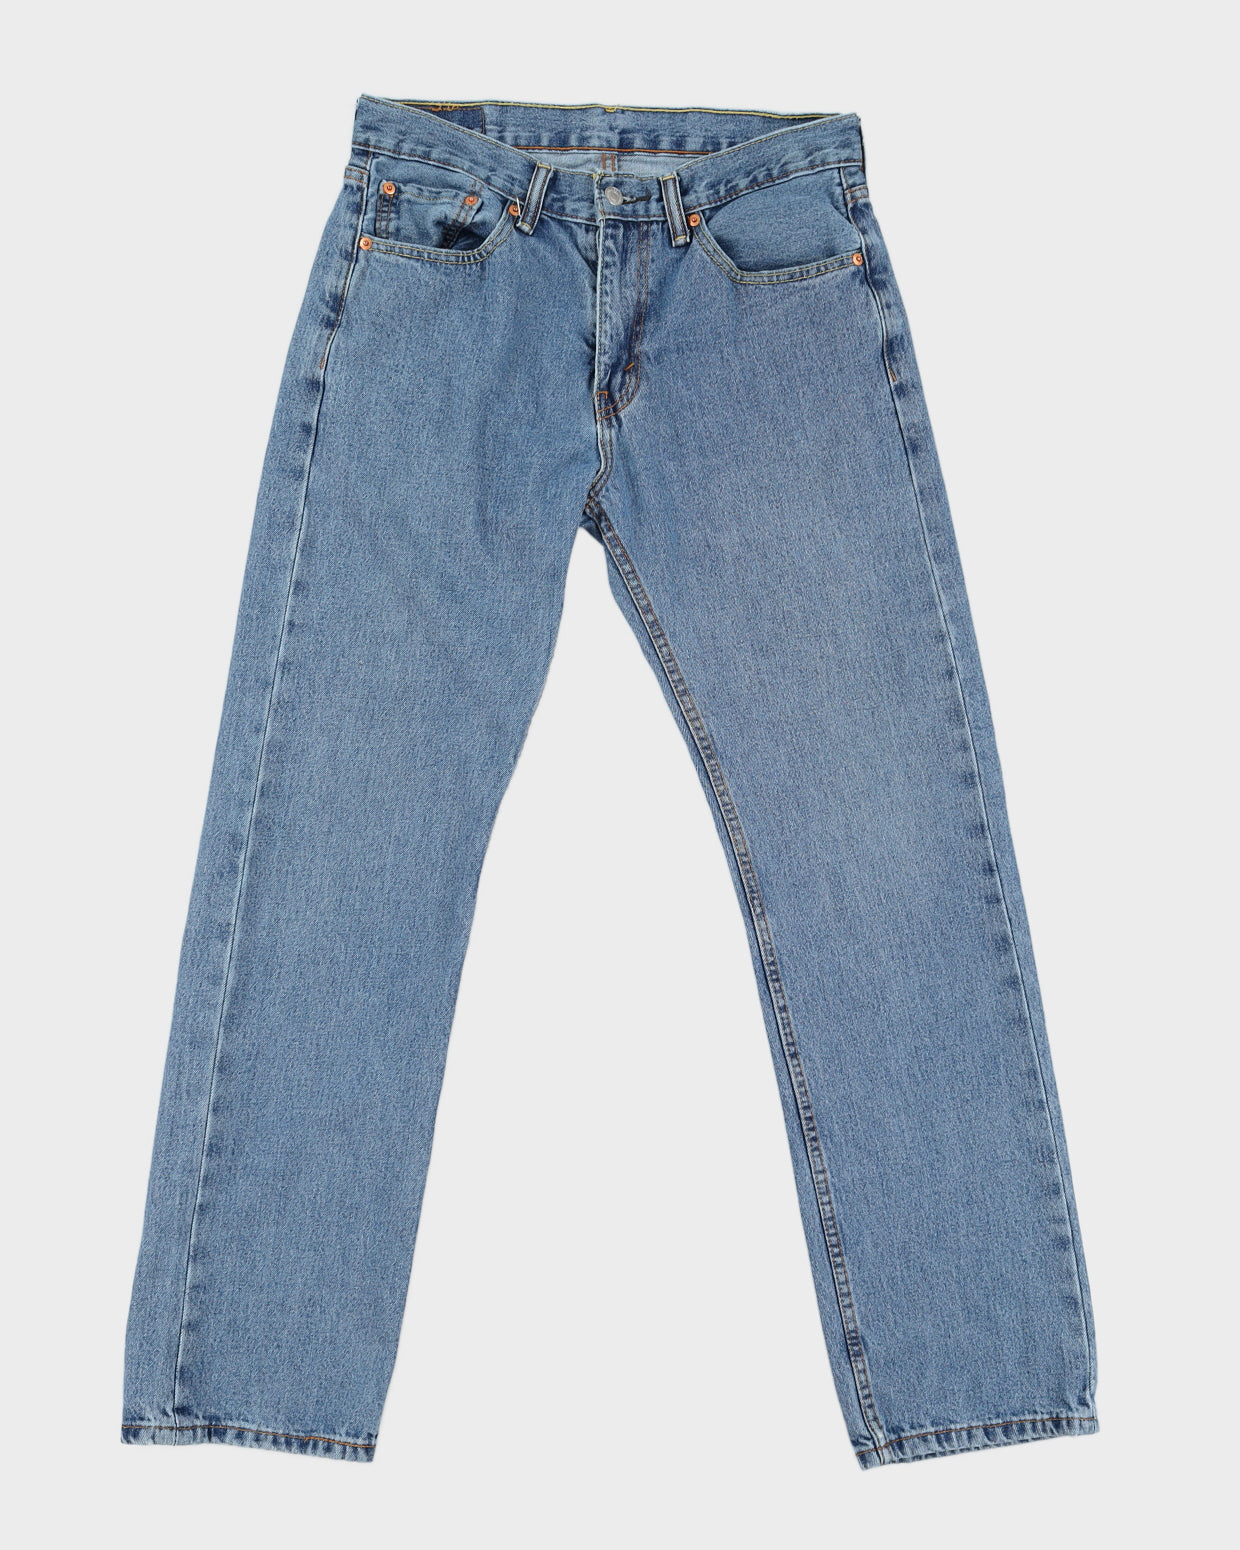 Levi's Medium Wash 505 Jeans - W31 - L32